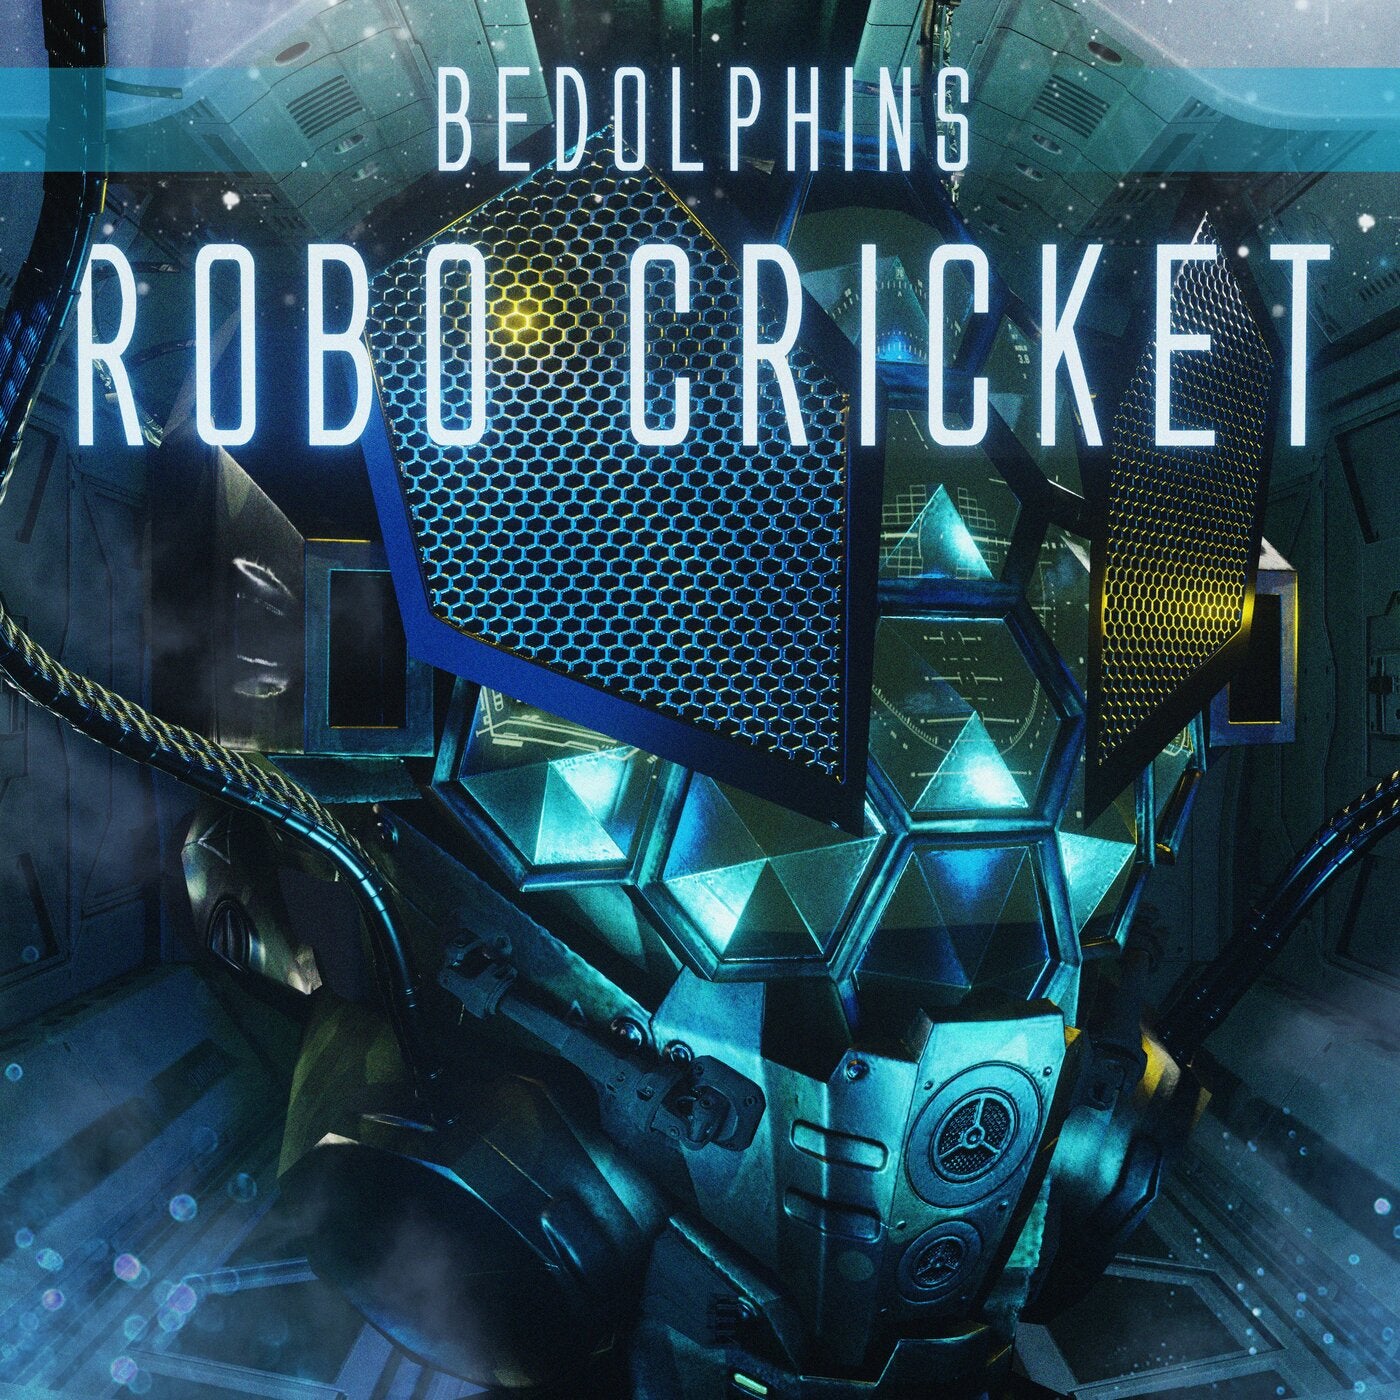 Robo Cricket